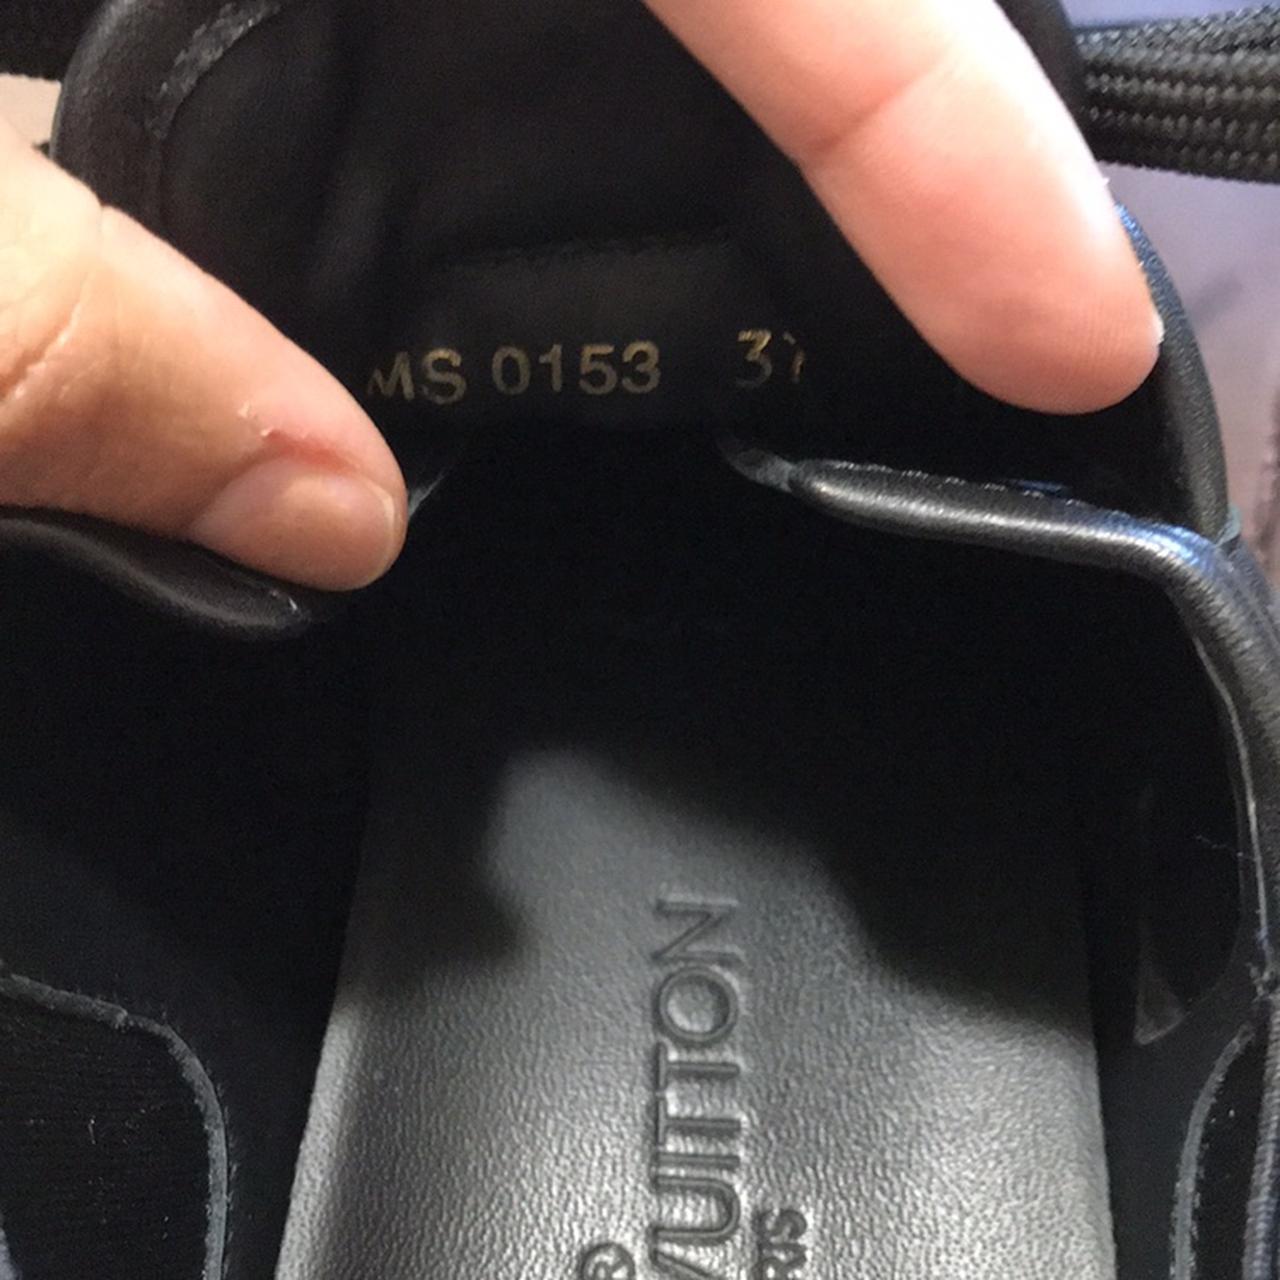 Louis Vuitton sneakers in size 37, US size 6.5 - Depop